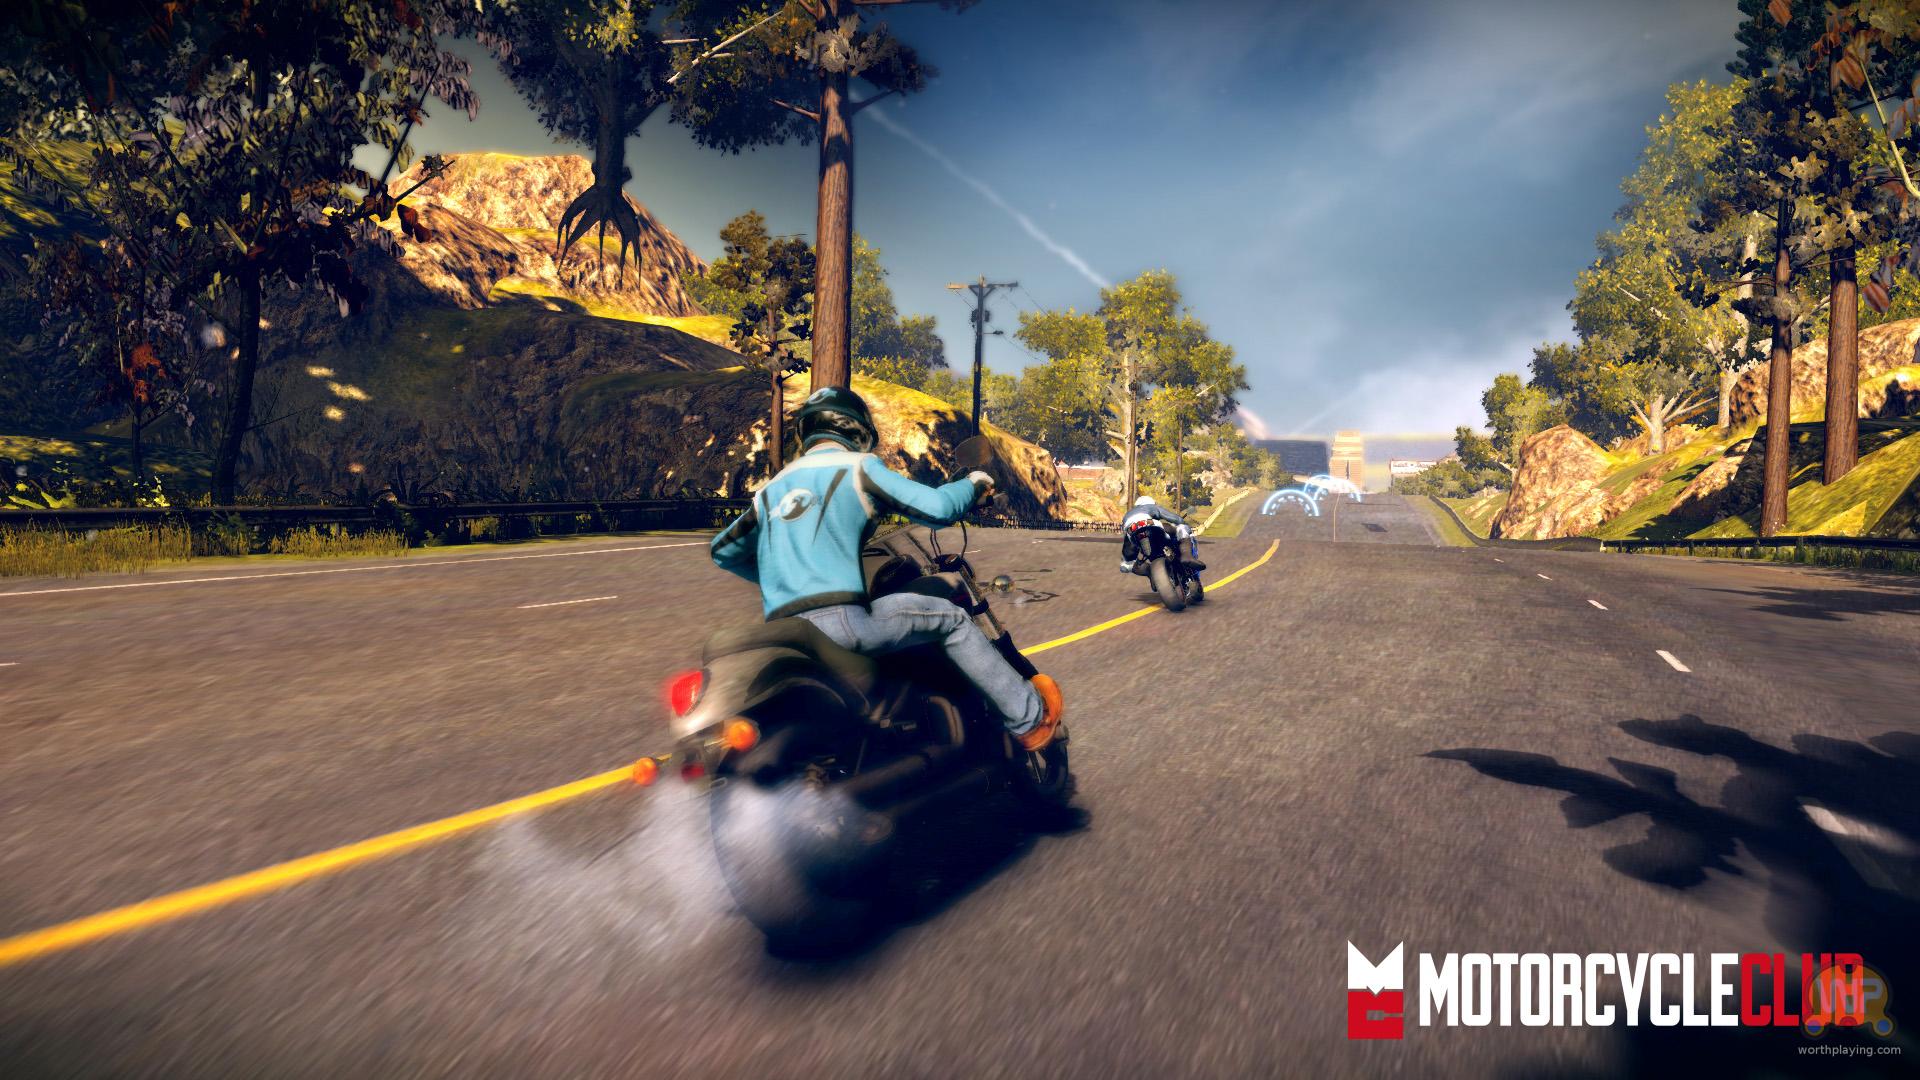 Игра где можно ездить на мотоцикле. Игра Motorcycle Club ps3. Motorcycle Club Xbox 360. Гонки на мотоциклах игры. Мотоциклы из игр.